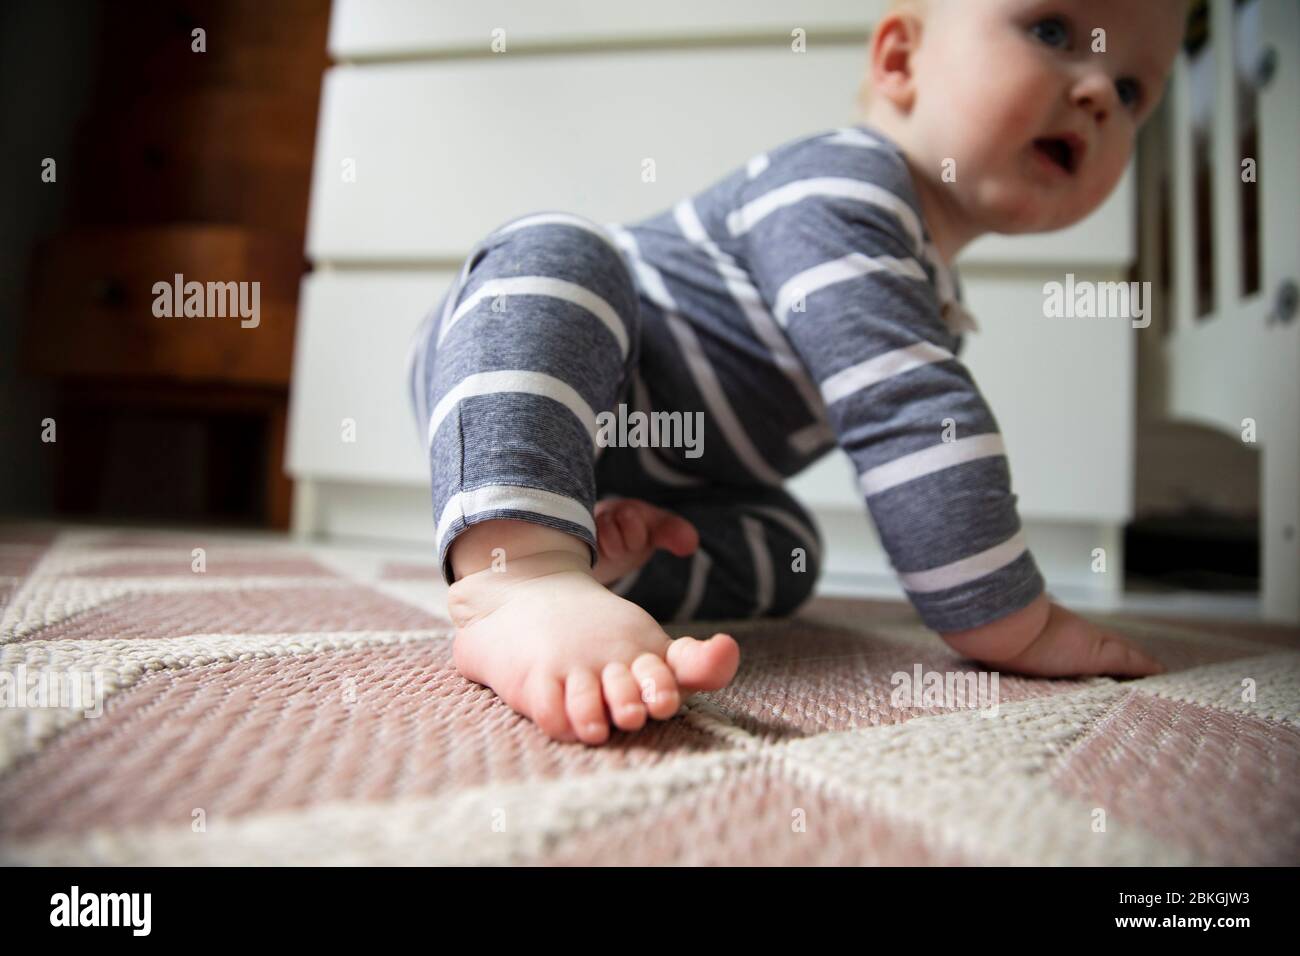 Cerca de un bebé pies y dedos de los pies mientras tratan de gatear en el suelo Foto de stock